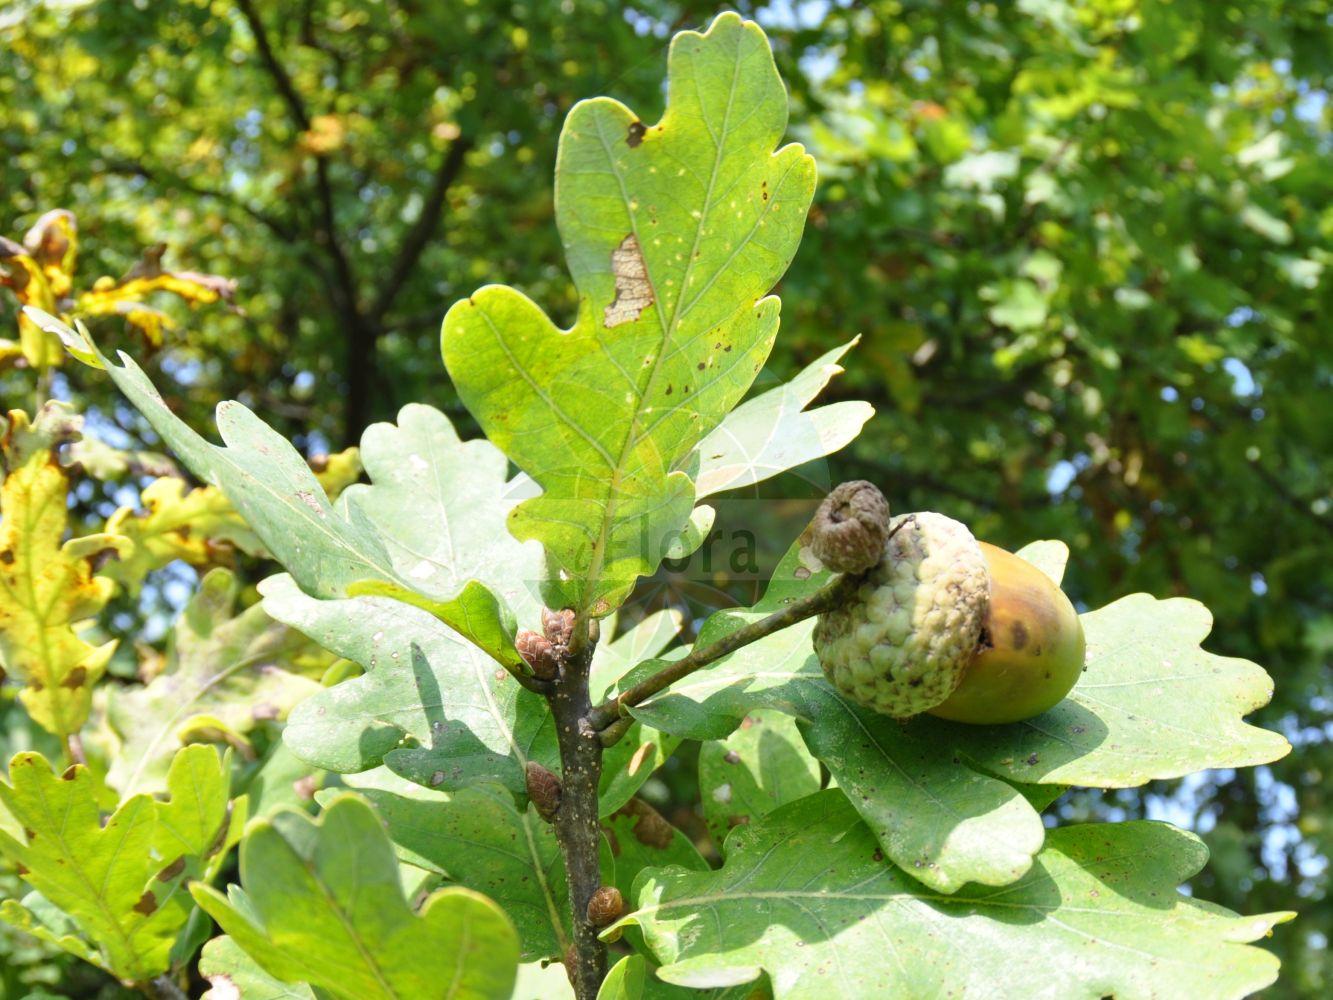 Foto von Quercus robur (Stiel-Eiche - Pedunculate Oak). Das Foto wurde in Eschborn, Hessen, Deutschland aufgenommen. ---- Photo of Quercus robur (Stiel-Eiche - Pedunculate Oak). The picture was taken in Eschborn, Hesse, Germany.(Quercus robur,Stiel-Eiche,Pedunculate Oak,Quercus robur,Quercus robur var. vulgaris,Stiel-Eiche,Sommer-Eiche,Pedunculate Oak,English Oak,Common Oak,Quercus,Eiche,Oak Tree,Fagaceae,Buchengewächse,Beech family)